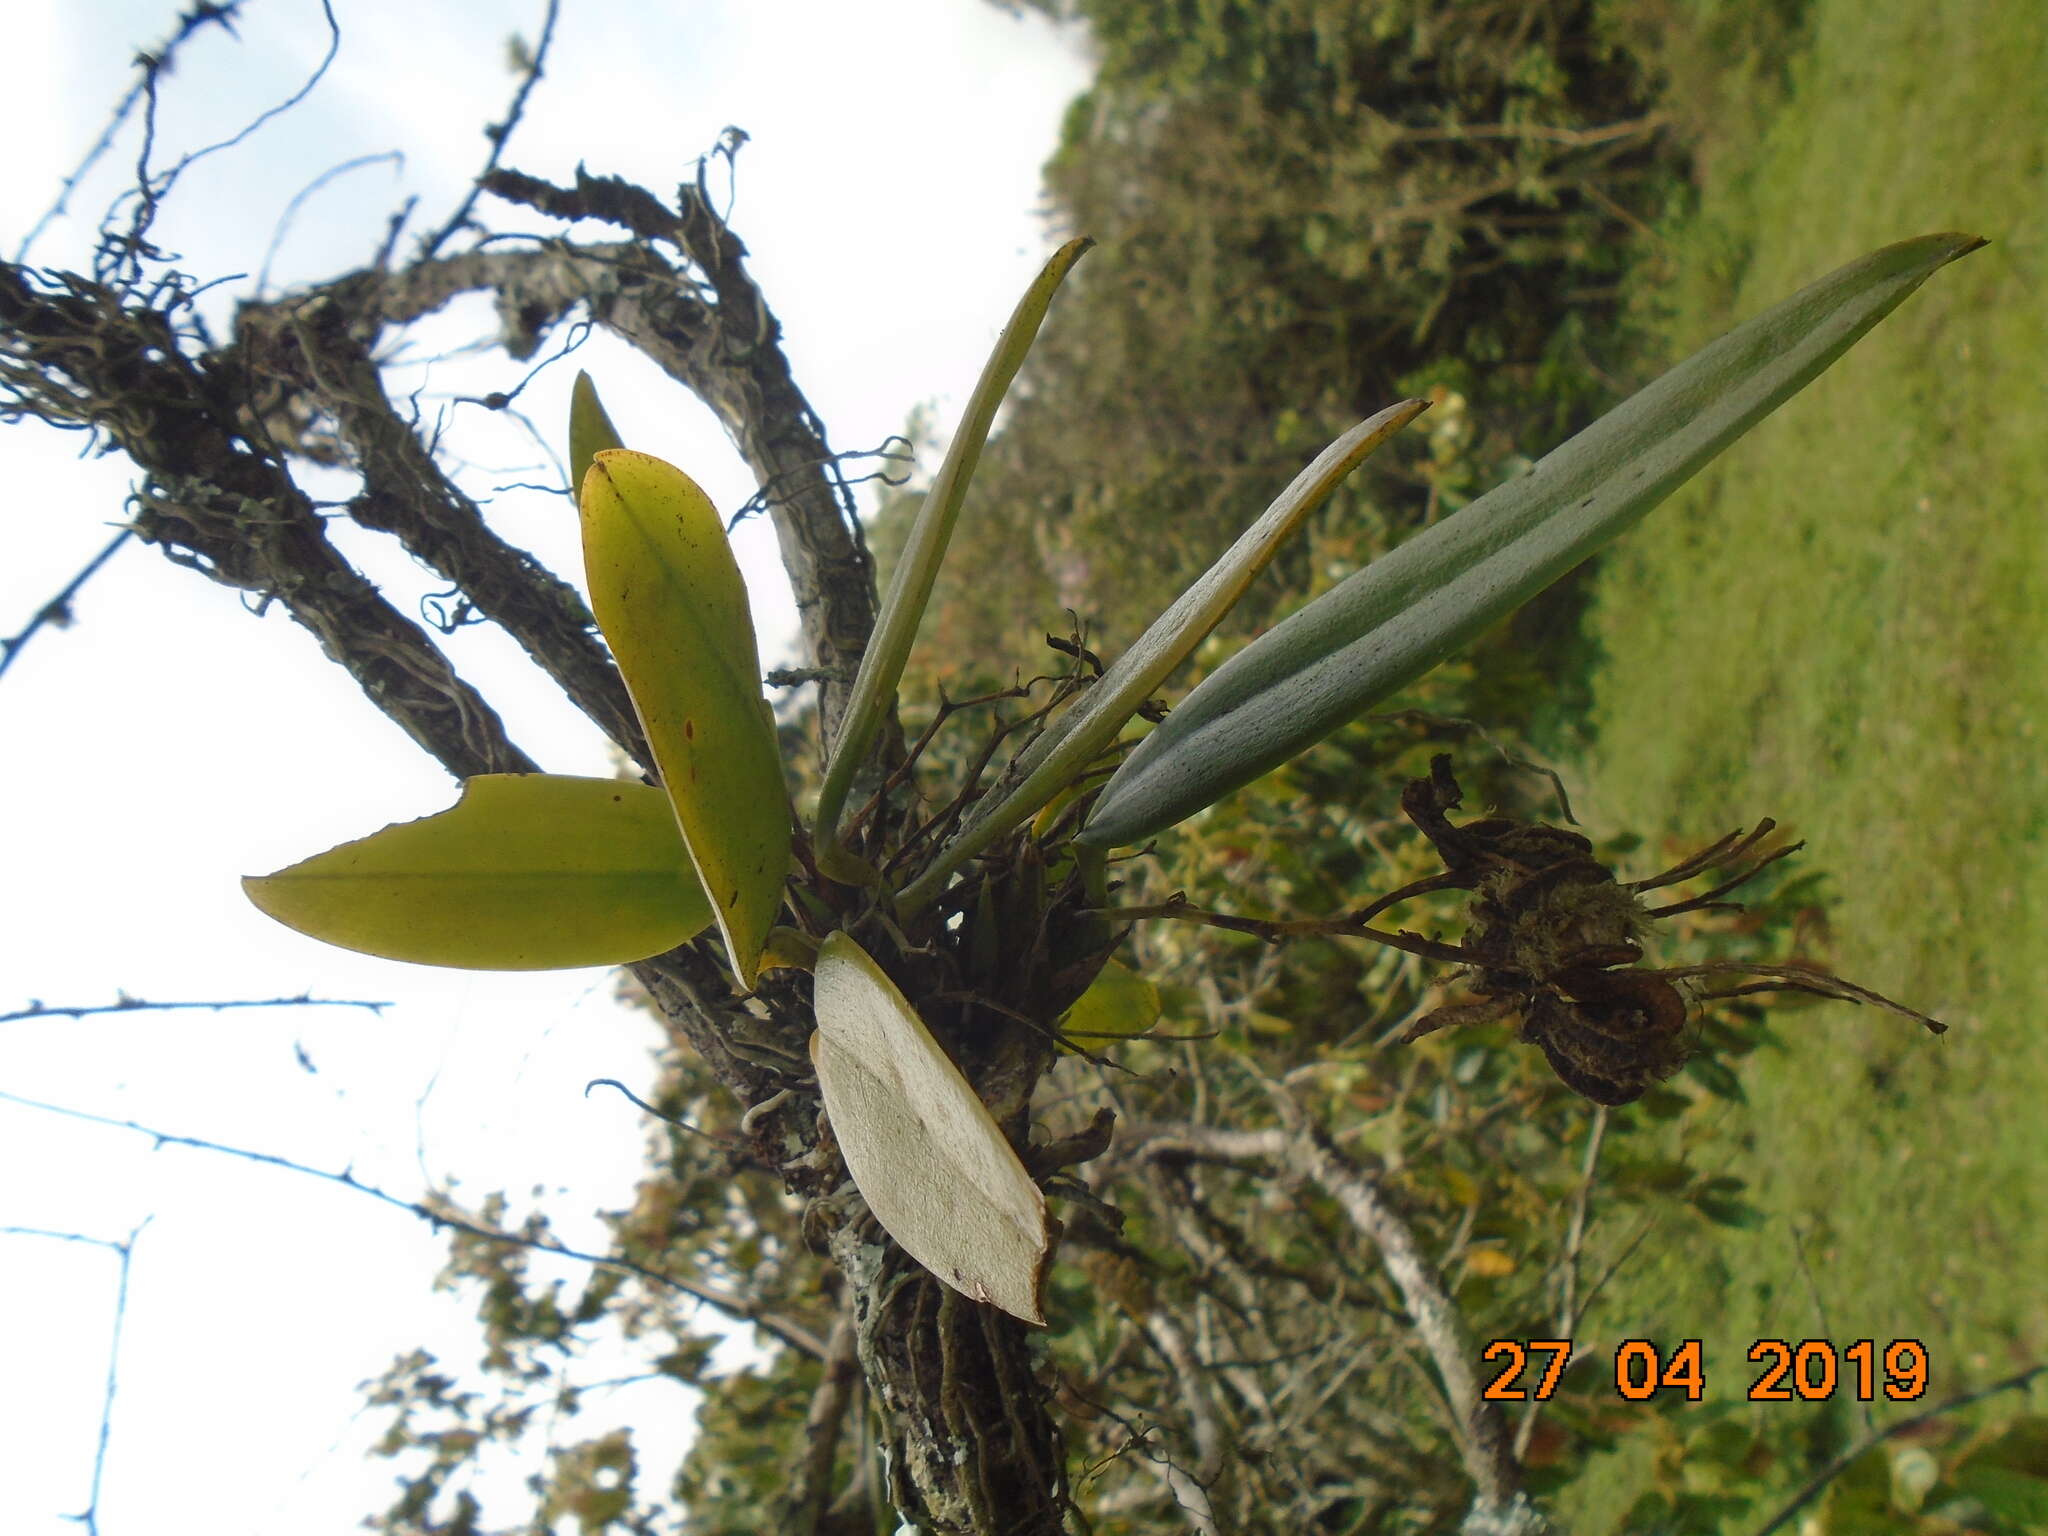 Imagem de Rodriguezia granadensis (Lindl.) Rchb. fil.